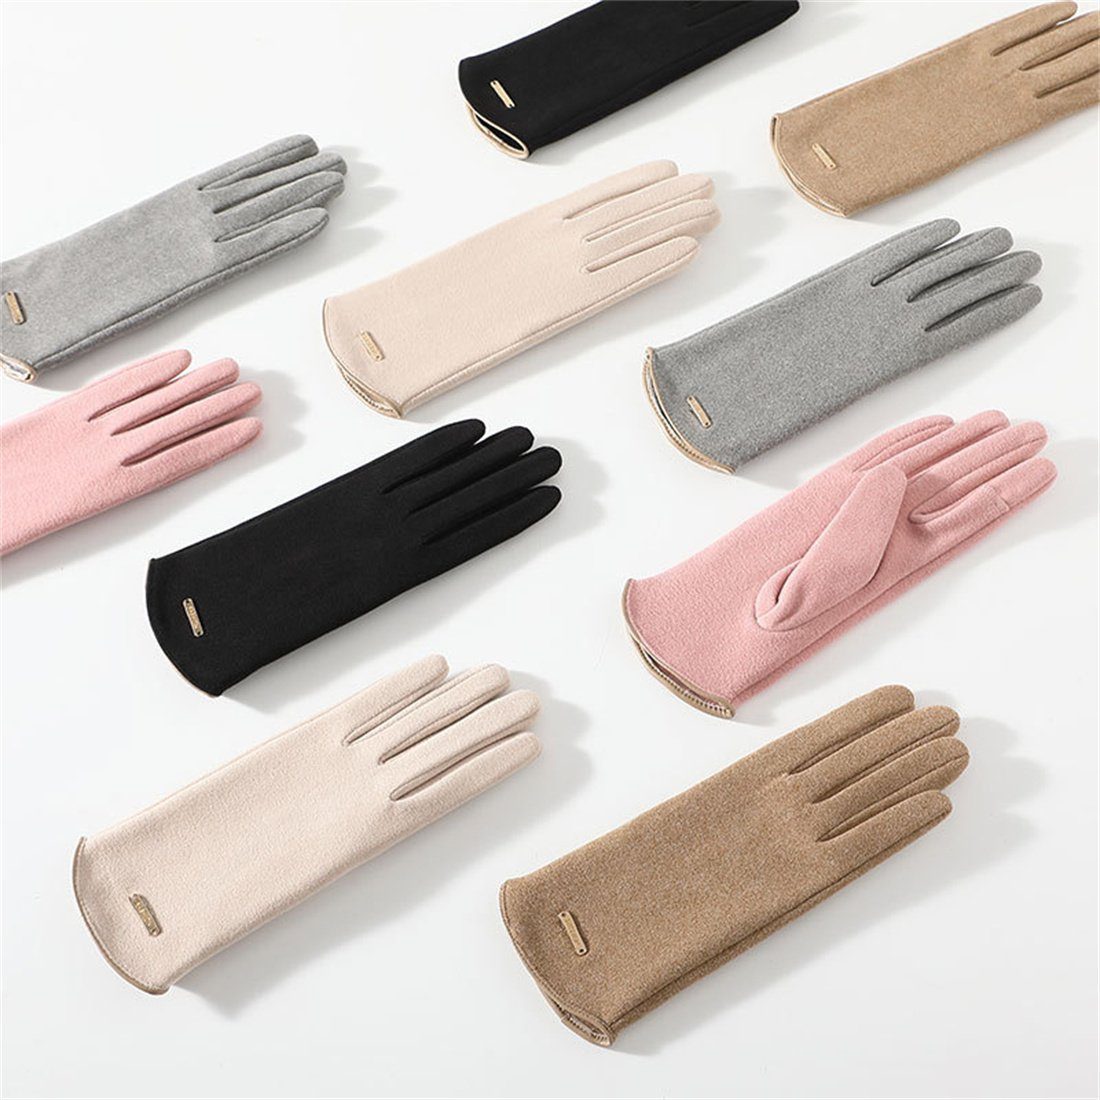 Women's Fleecehandschuhe Winter Touch DÖRÖY Screen Gloves,Reiten Warme Schwarz Handschuhe Padded